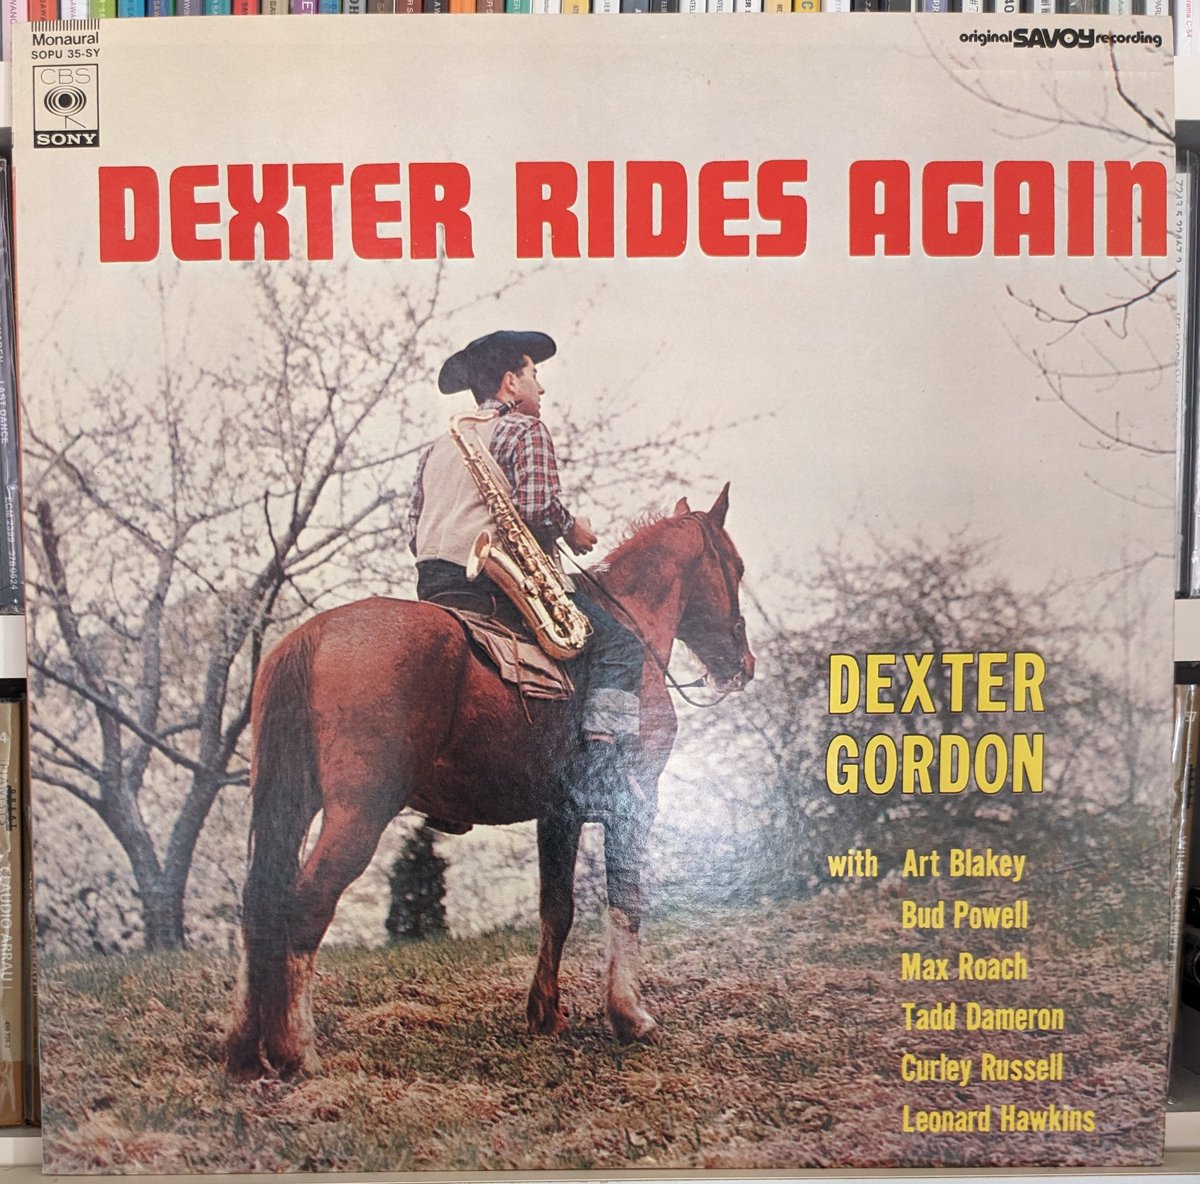 '45~'47年にデクスターがSavoyレーベルに残した4セッション15曲を収録📀3分前後の演奏に凝縮された若きデックスの豪快奔放なtsが楽しめる🎷パウエル、ラッセル、ローチのリズムセクションによる4曲はこれぞビバップ✨bsのレオ·パーカーとのバトルやナヴァロとの共演も #DexterGordon #DexterRidesAgain